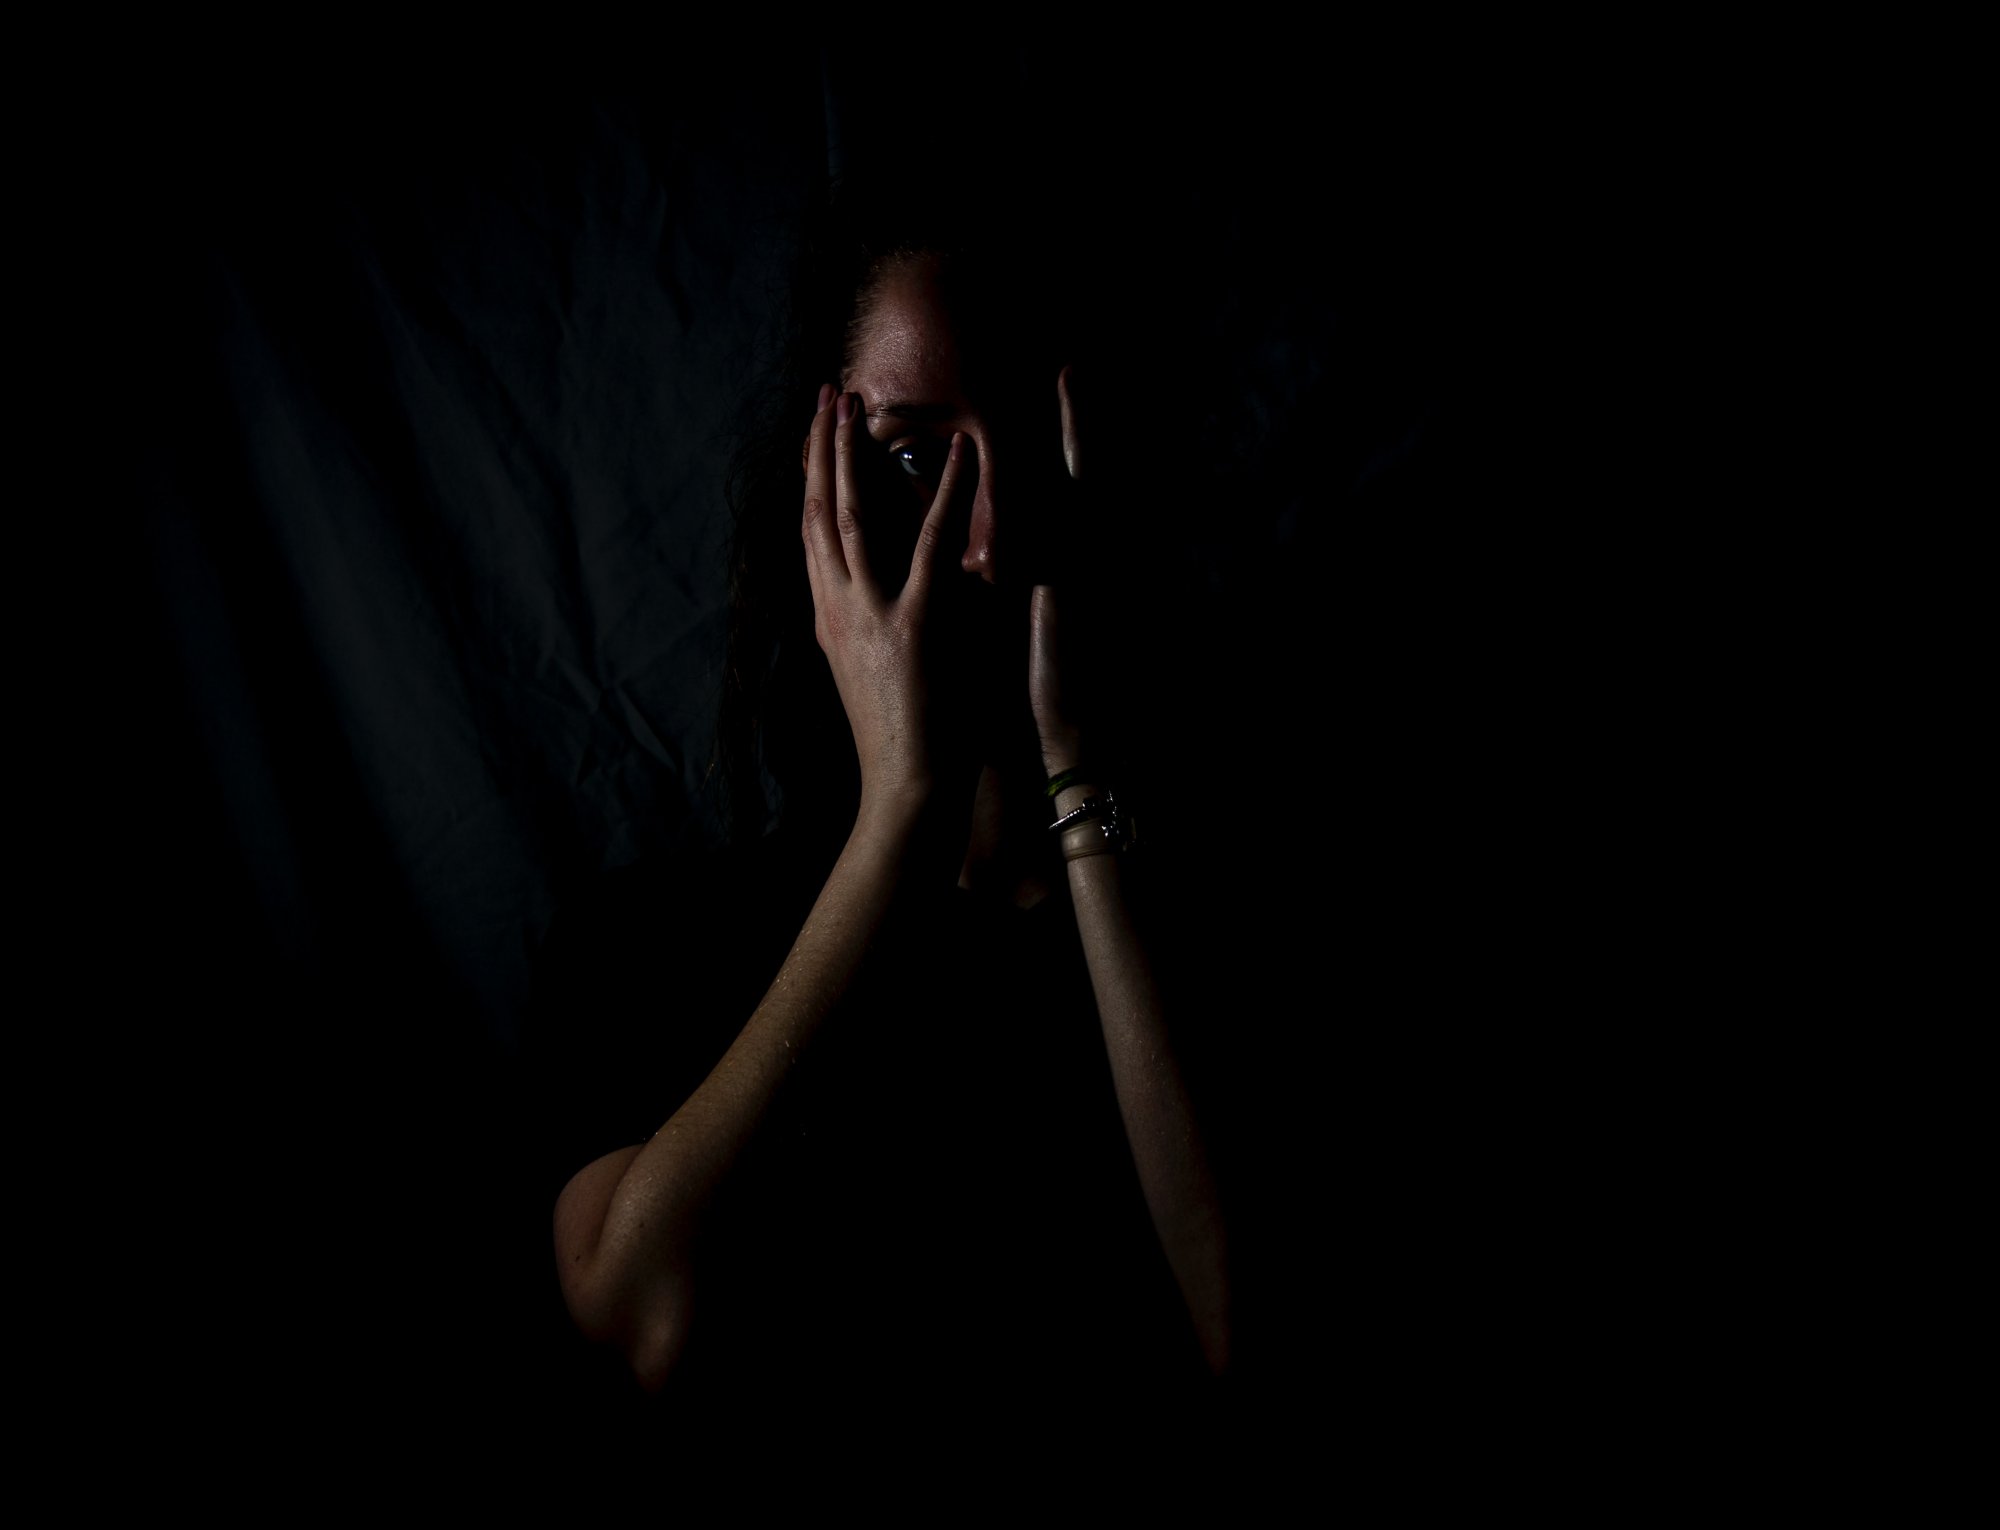 Διοτίμα: Οι τροποποιήσεις του νόμου για την ενδοοικογενειακή βία δεν ανταποκρίνονται στις ανάγκες για την προστασία των θυμάτων